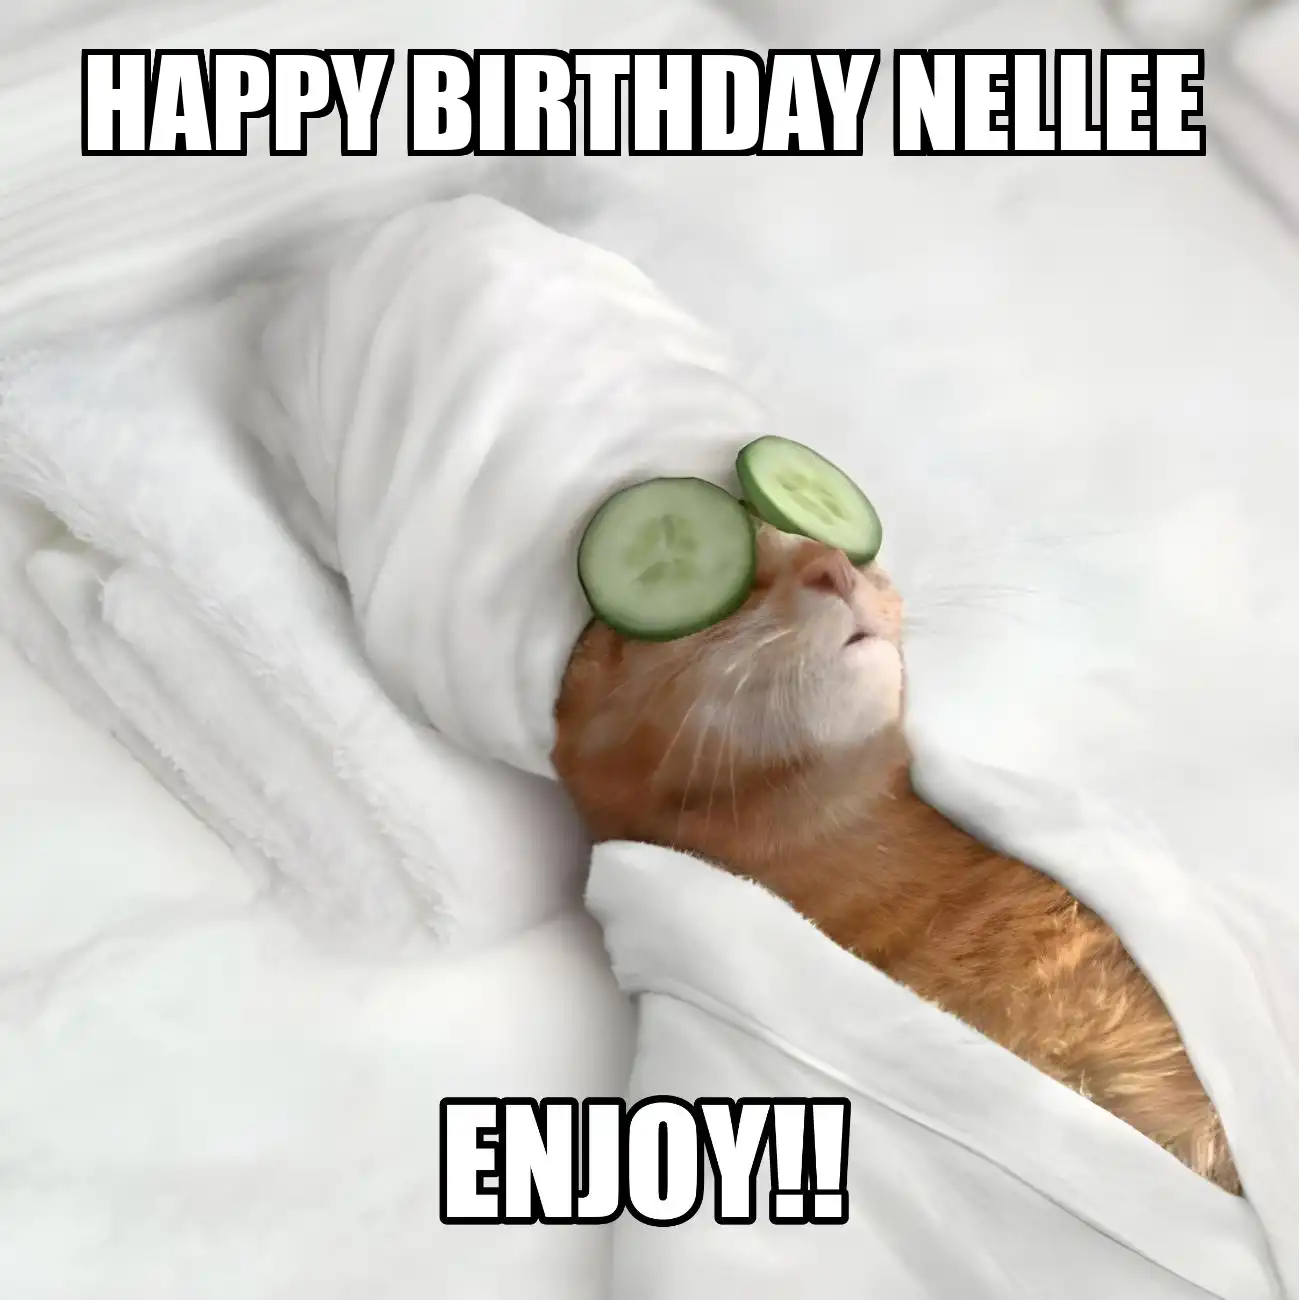 Happy Birthday Nellee Enjoy Cat Meme